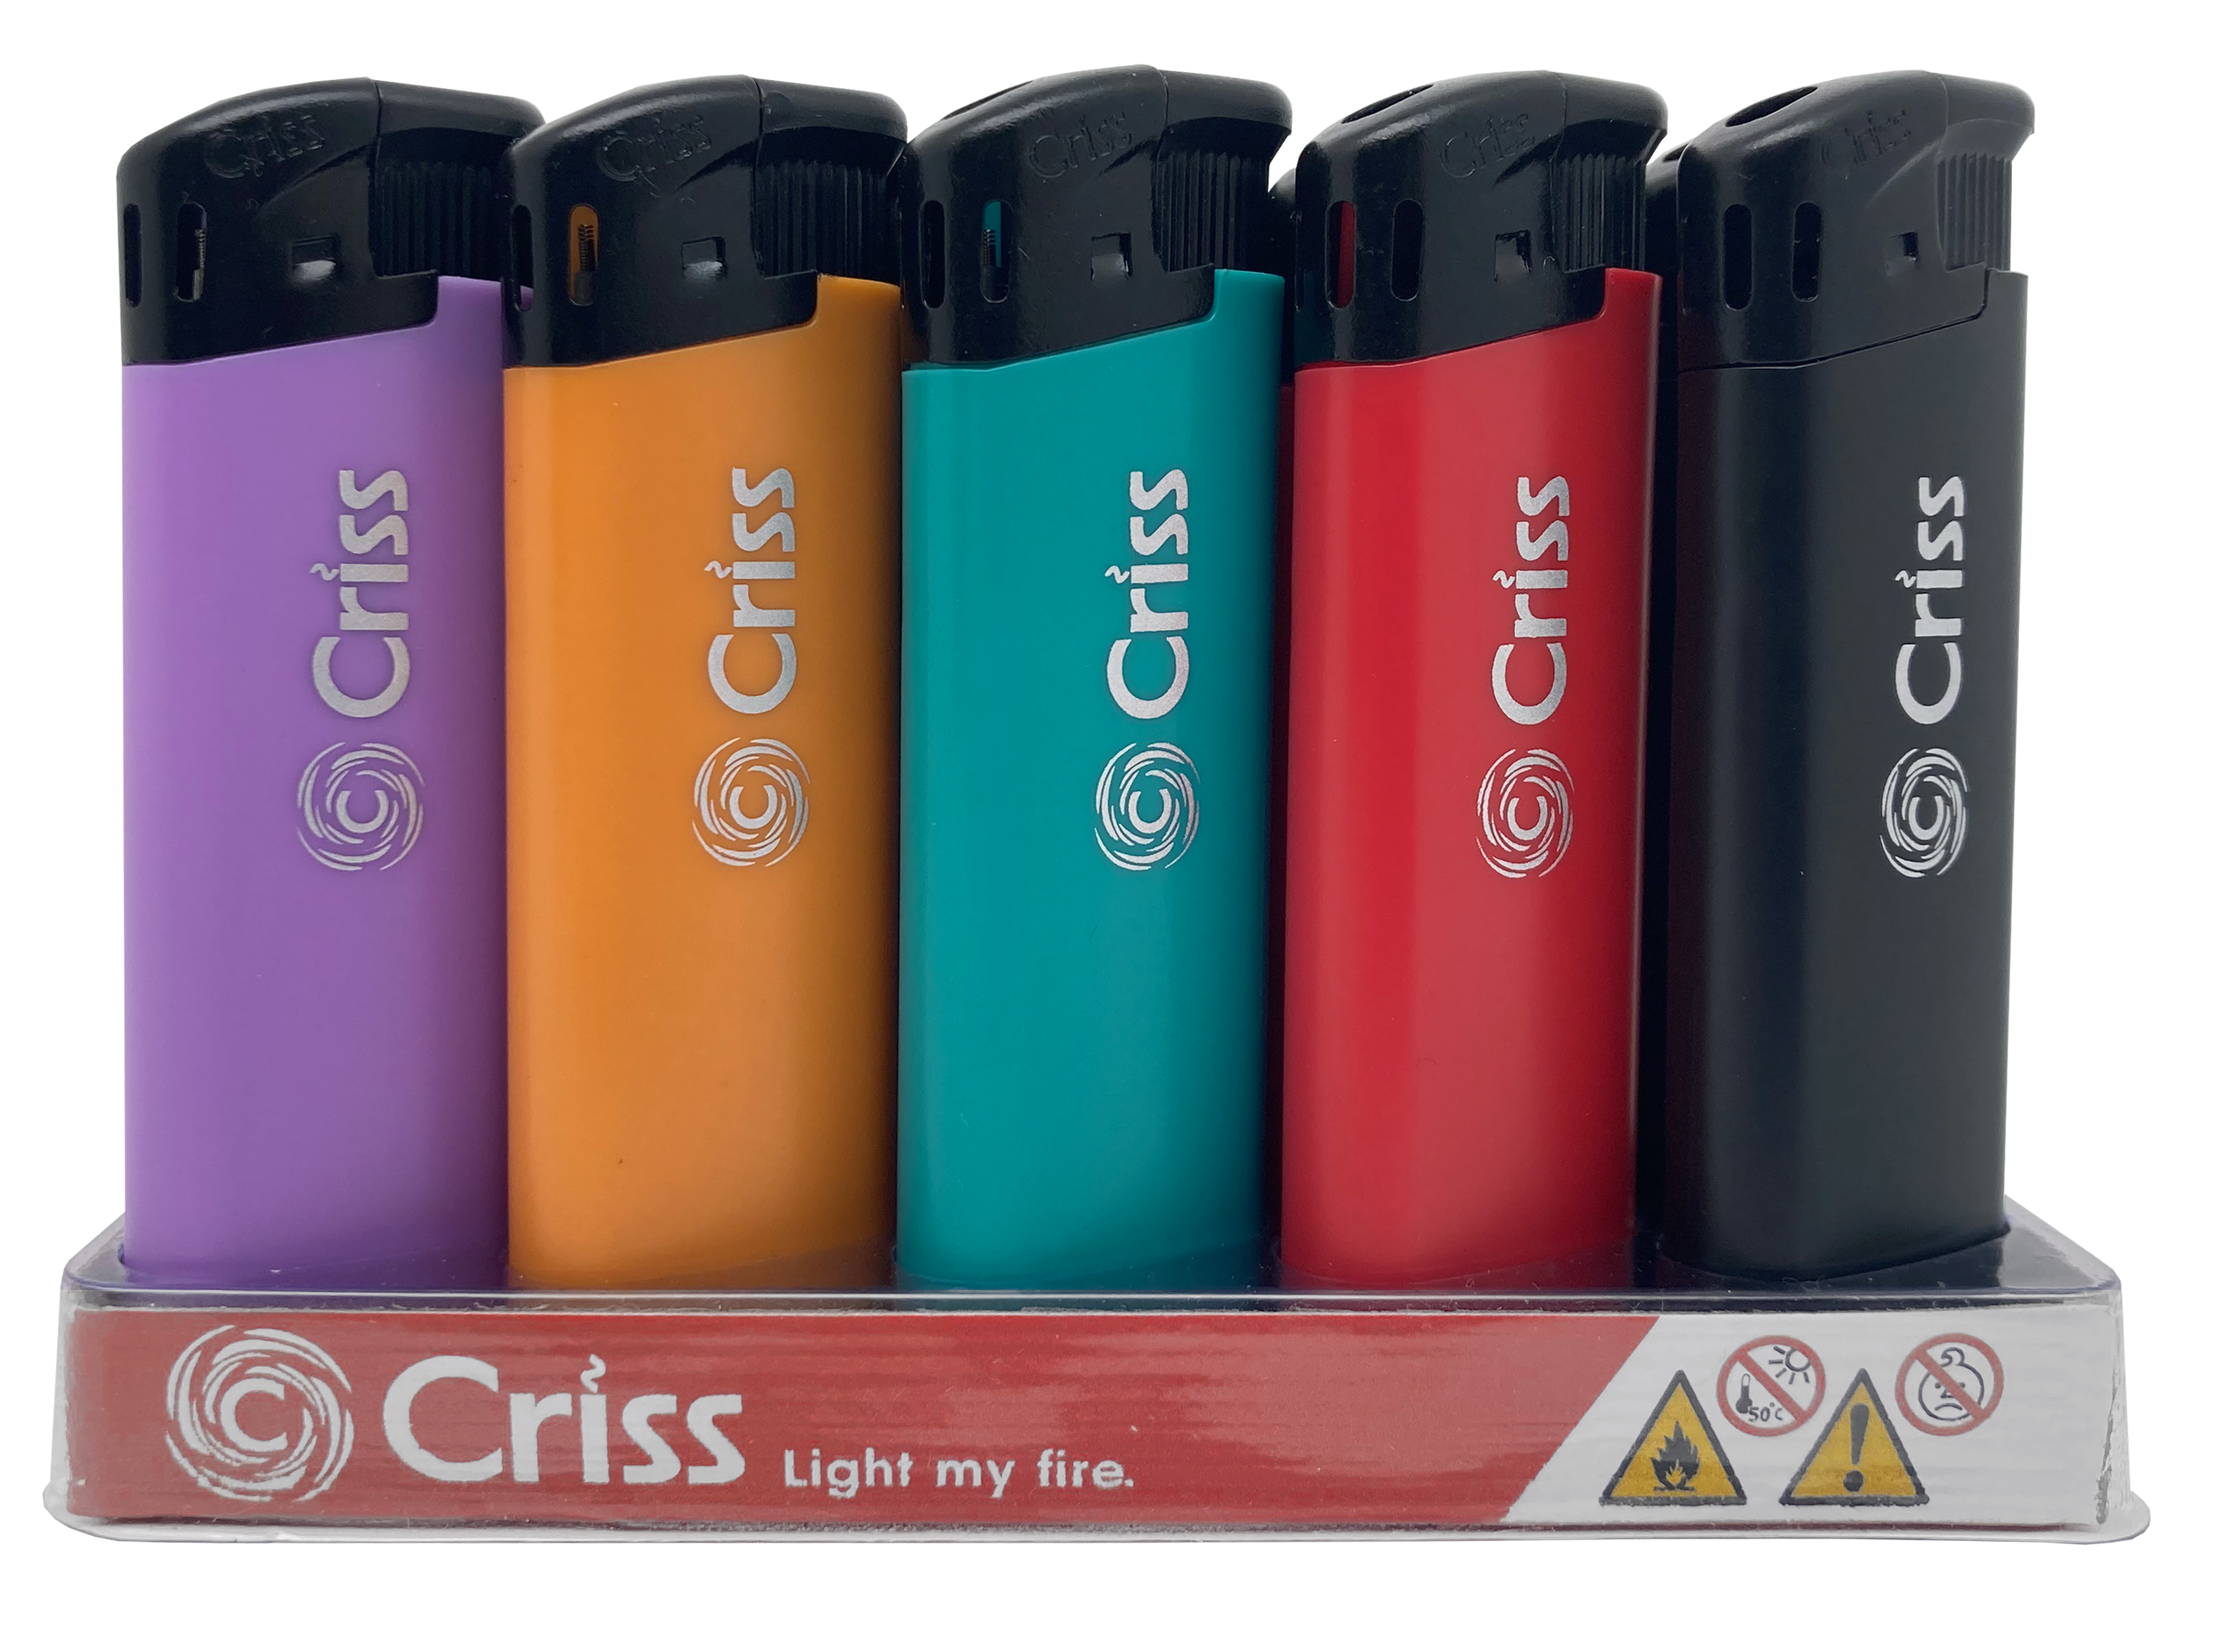 Одноразовые газовые зажигалки  торговой марки CRISS